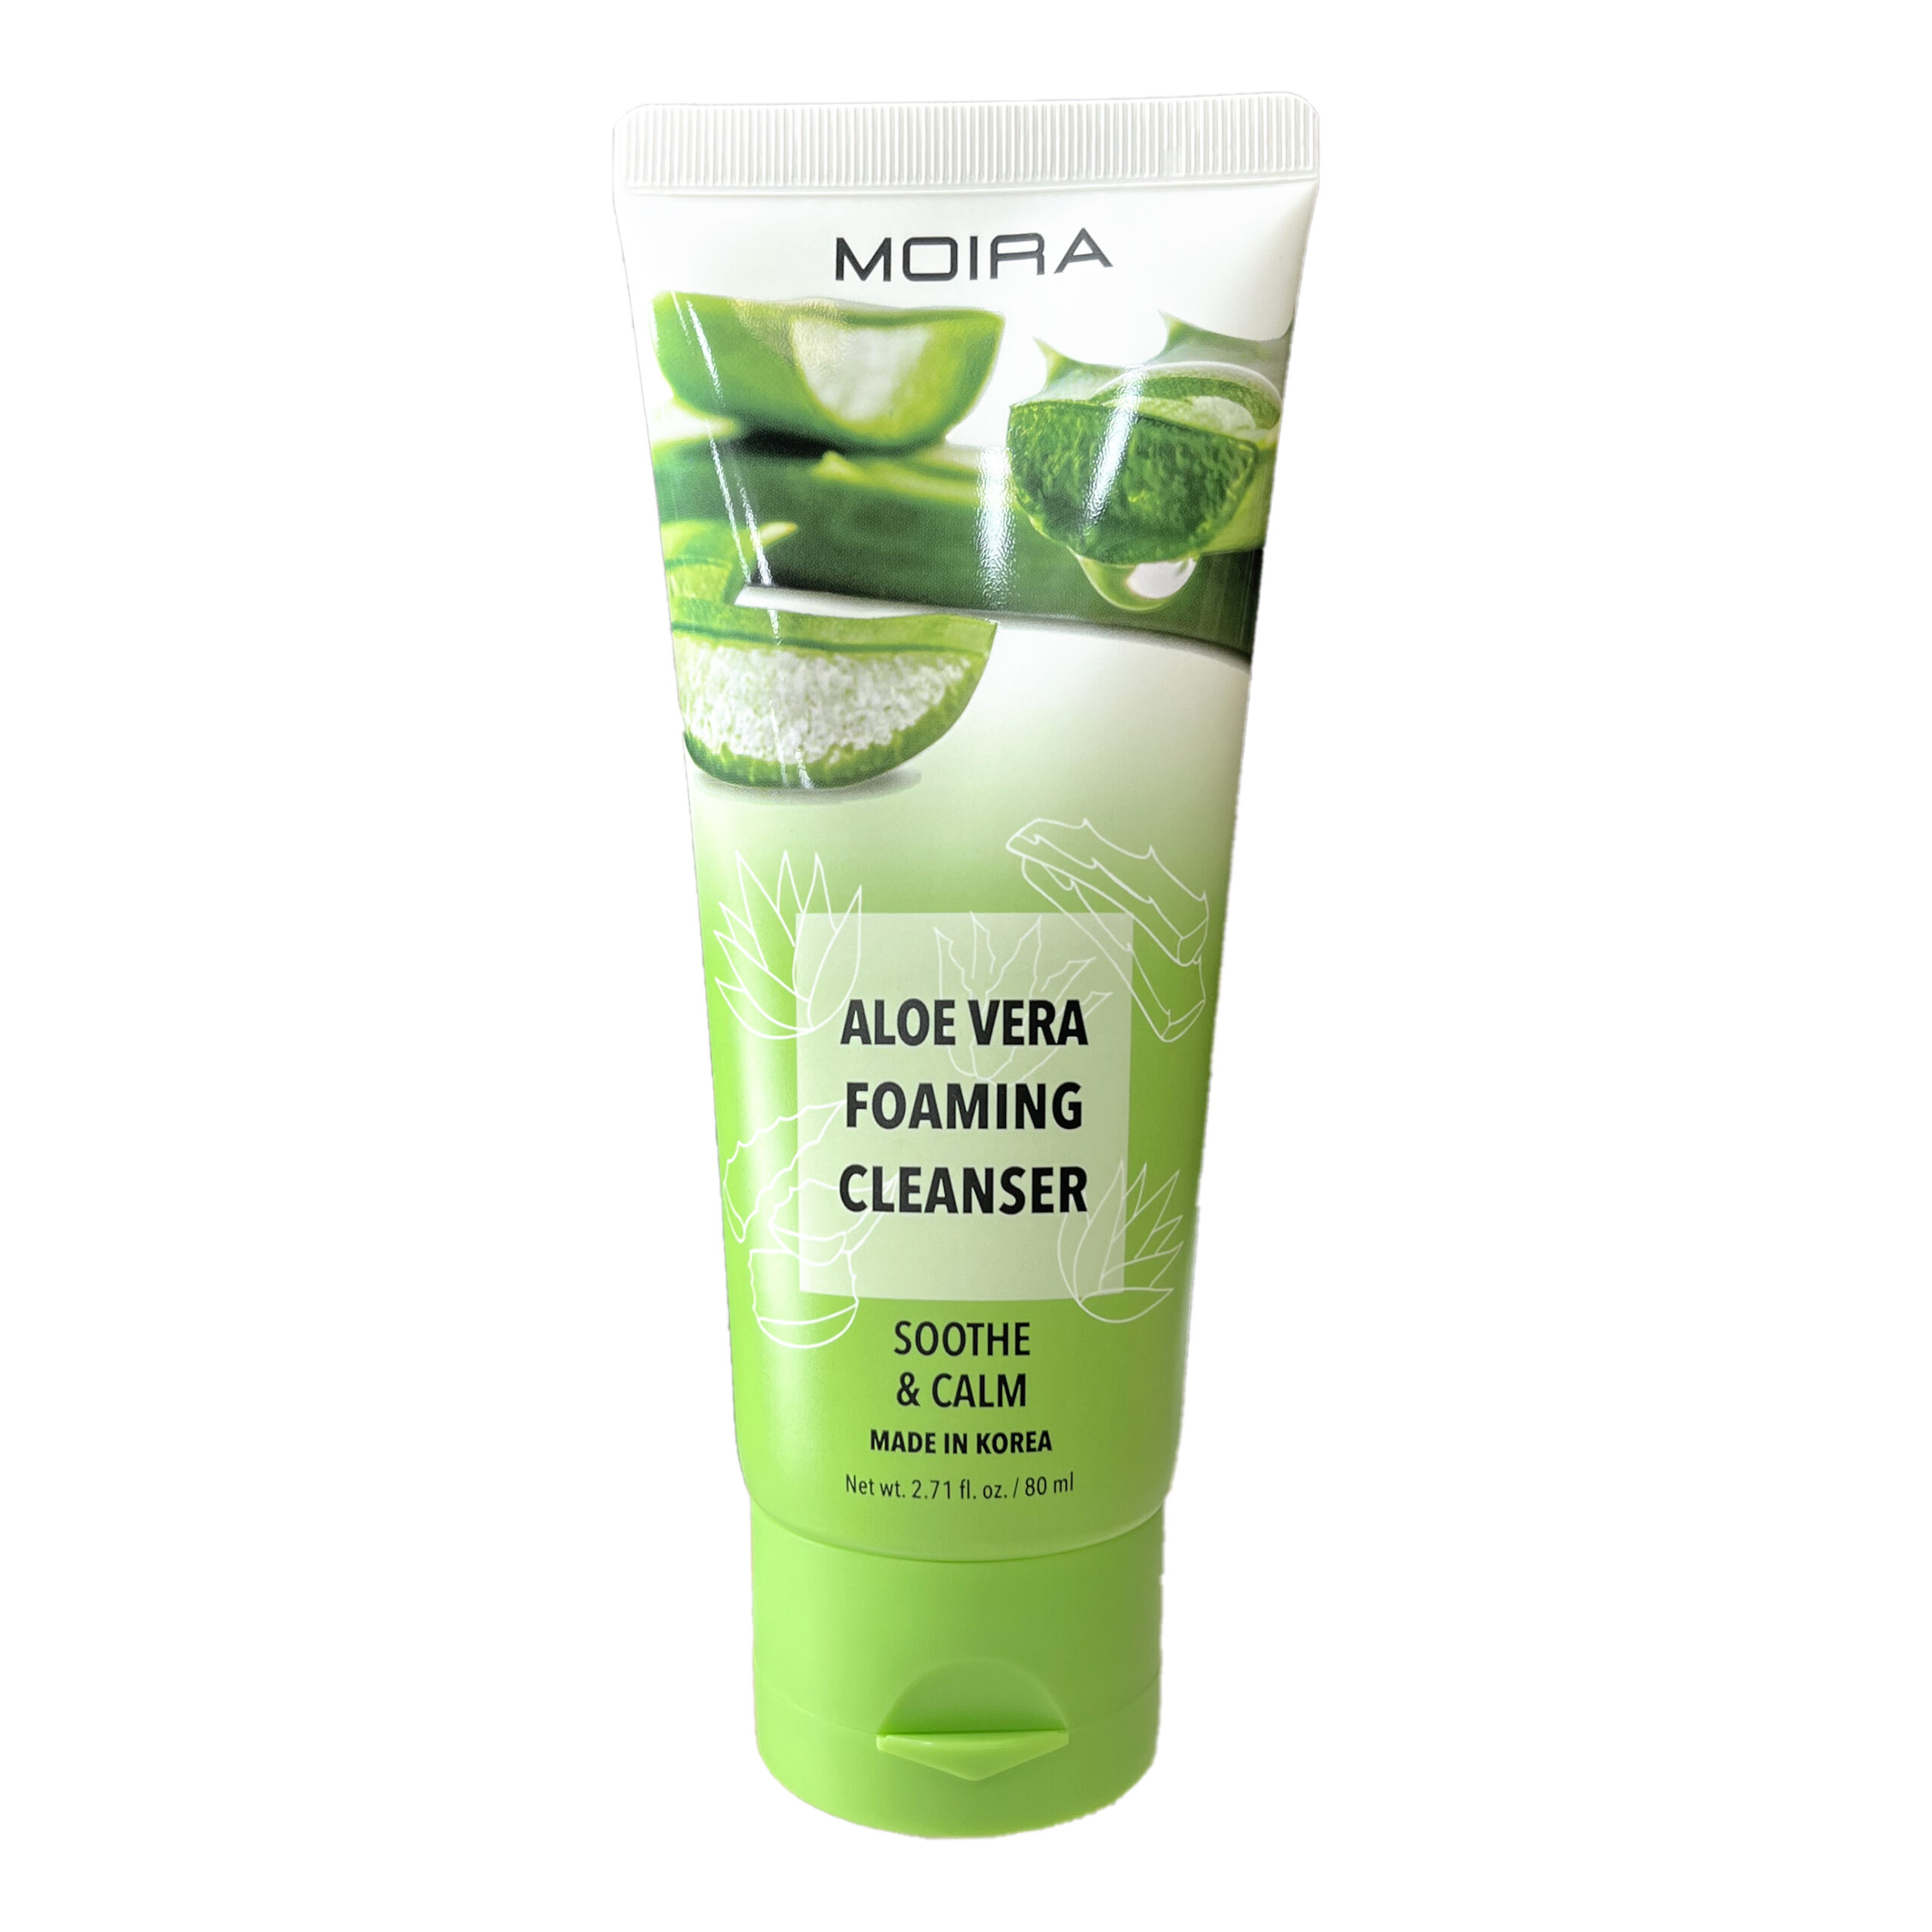 MOIRA Aloe Vera Foaming Cleanser es una fórmula suave adecuada para todo tipo de piel. Con una infusión de extracto de aloe vera, este limpiador ayuda a retener la humedad de la piel y la calma para lograr un brillo natural y saludable.